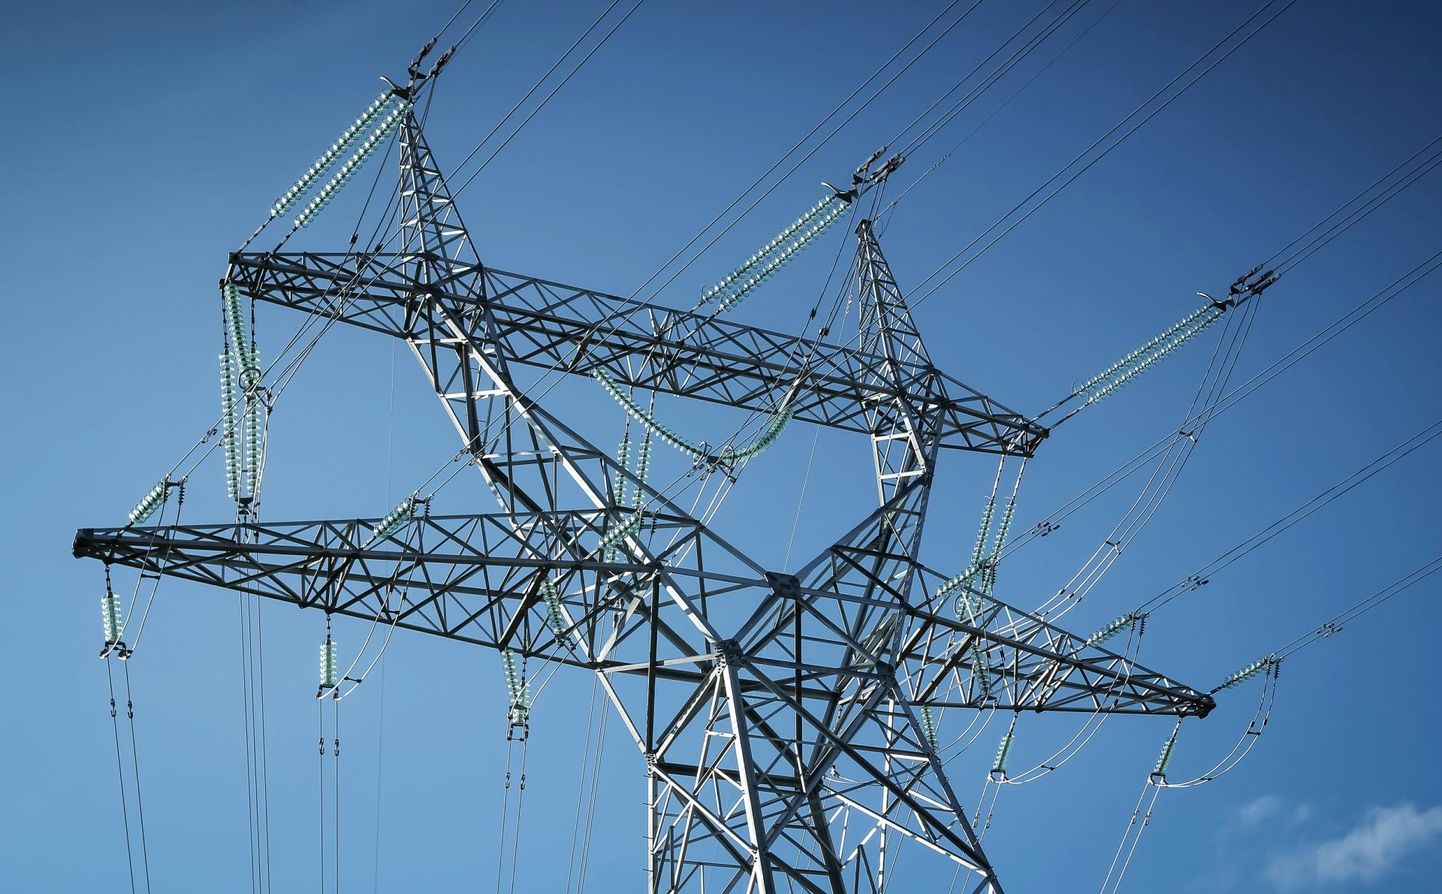 Elektrilevi keskmine võimsus keskpingel ühe liitumispunkti kohta on 1000 kilovatti ja keskmine liitumistasu koos käibemaksuga 67 000 eurot. Liitumistasu keskpingel varieerus möödunud aastal 8100st 1 170 000 euroni.